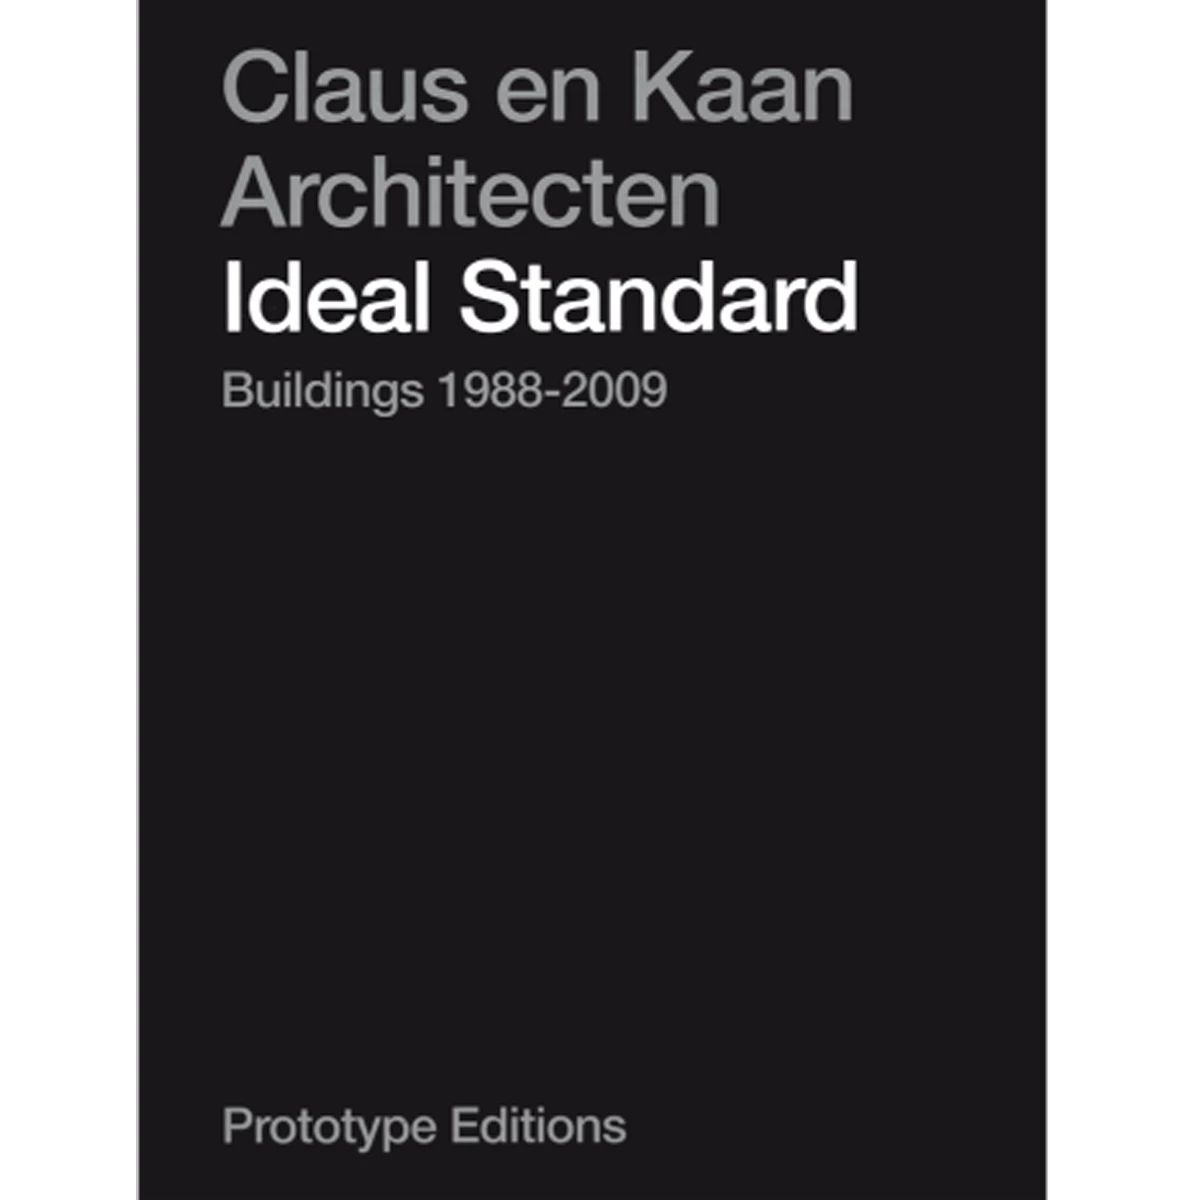 Claus en Kaan Architecten: Ideal Standard